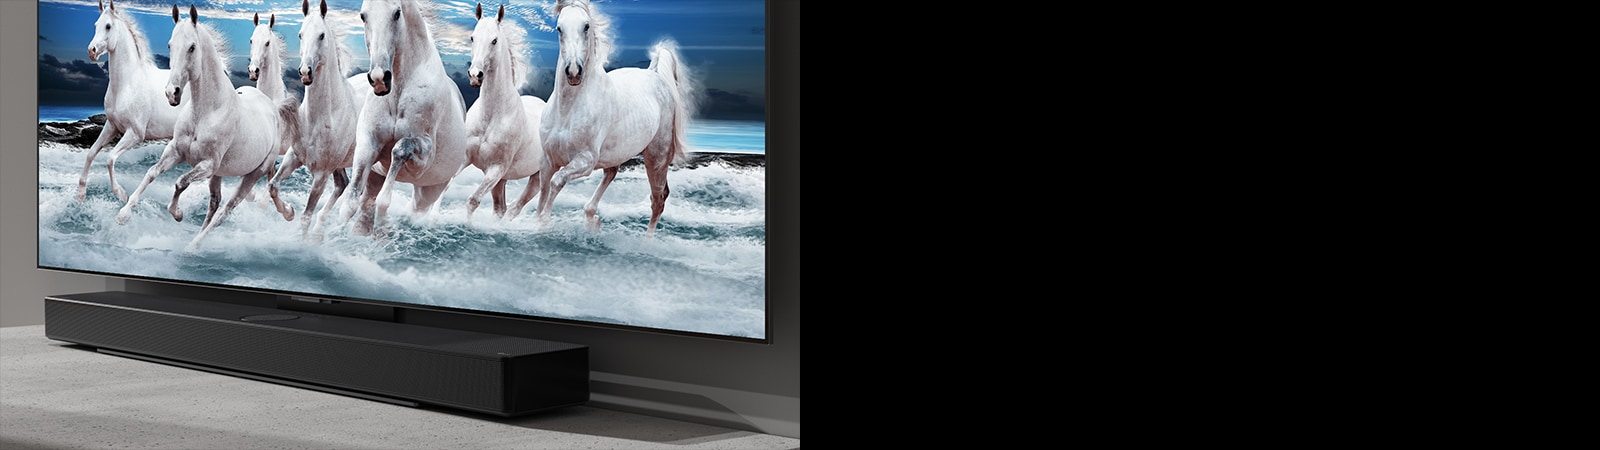 La barra de sonido y el televisor se colocan sobre la mesa blanca y se muestran 7 caballos blancos en el televisor.